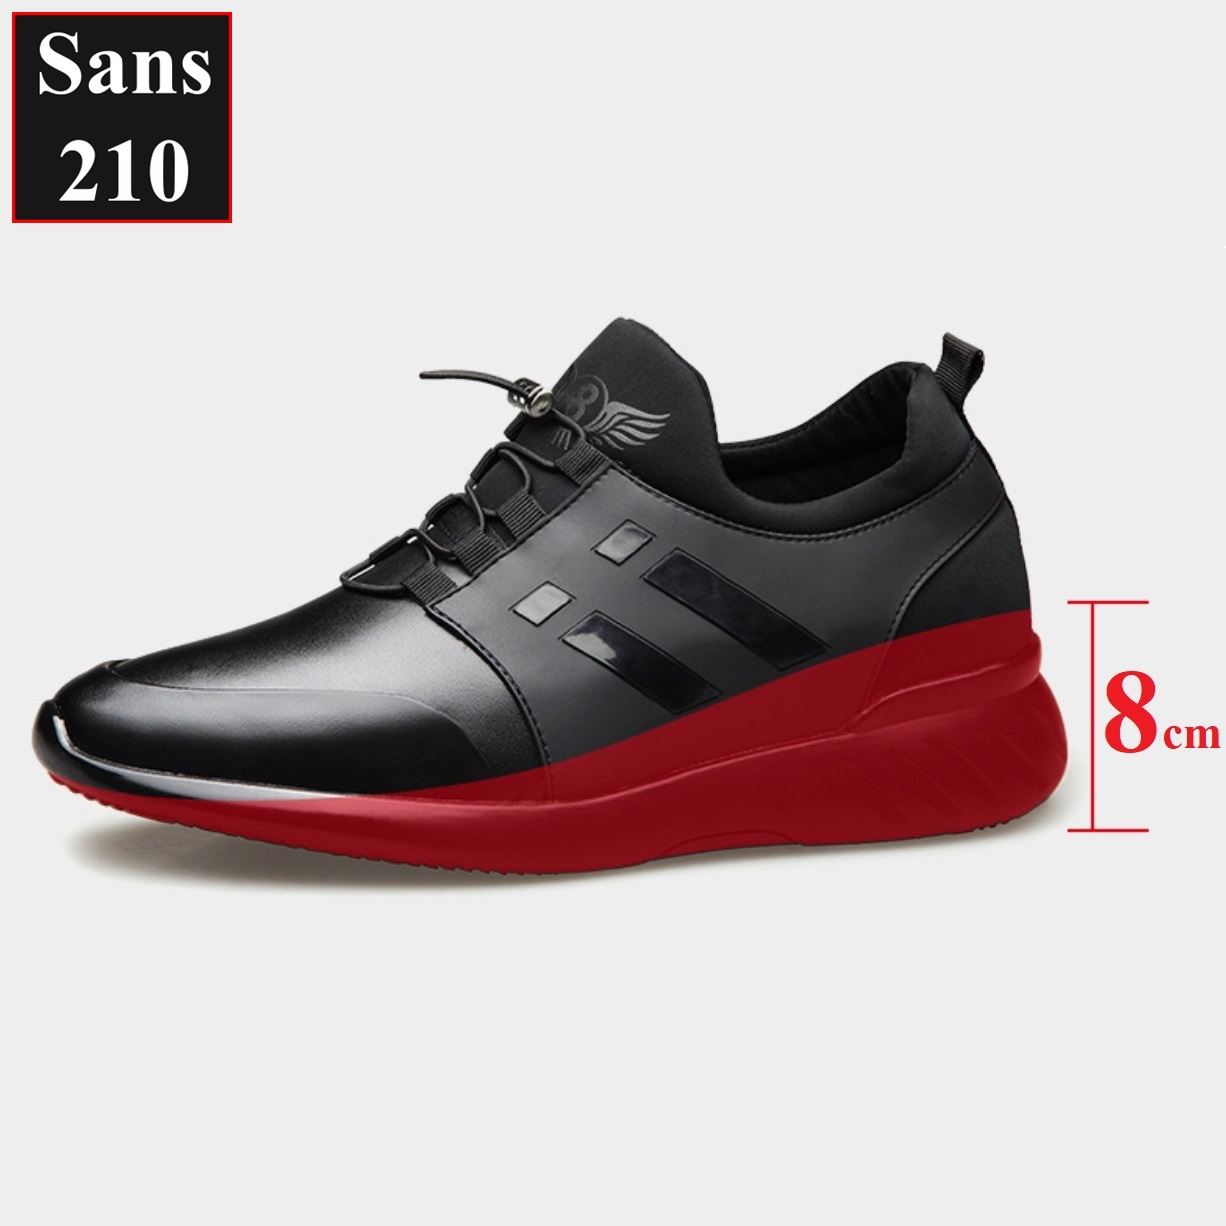 Giày tăng chiều cao nam unisex 8cm Sans210 sneaker da bò thật full đen thể thao có big size to lớn 44 45 46 47 48 độn đế